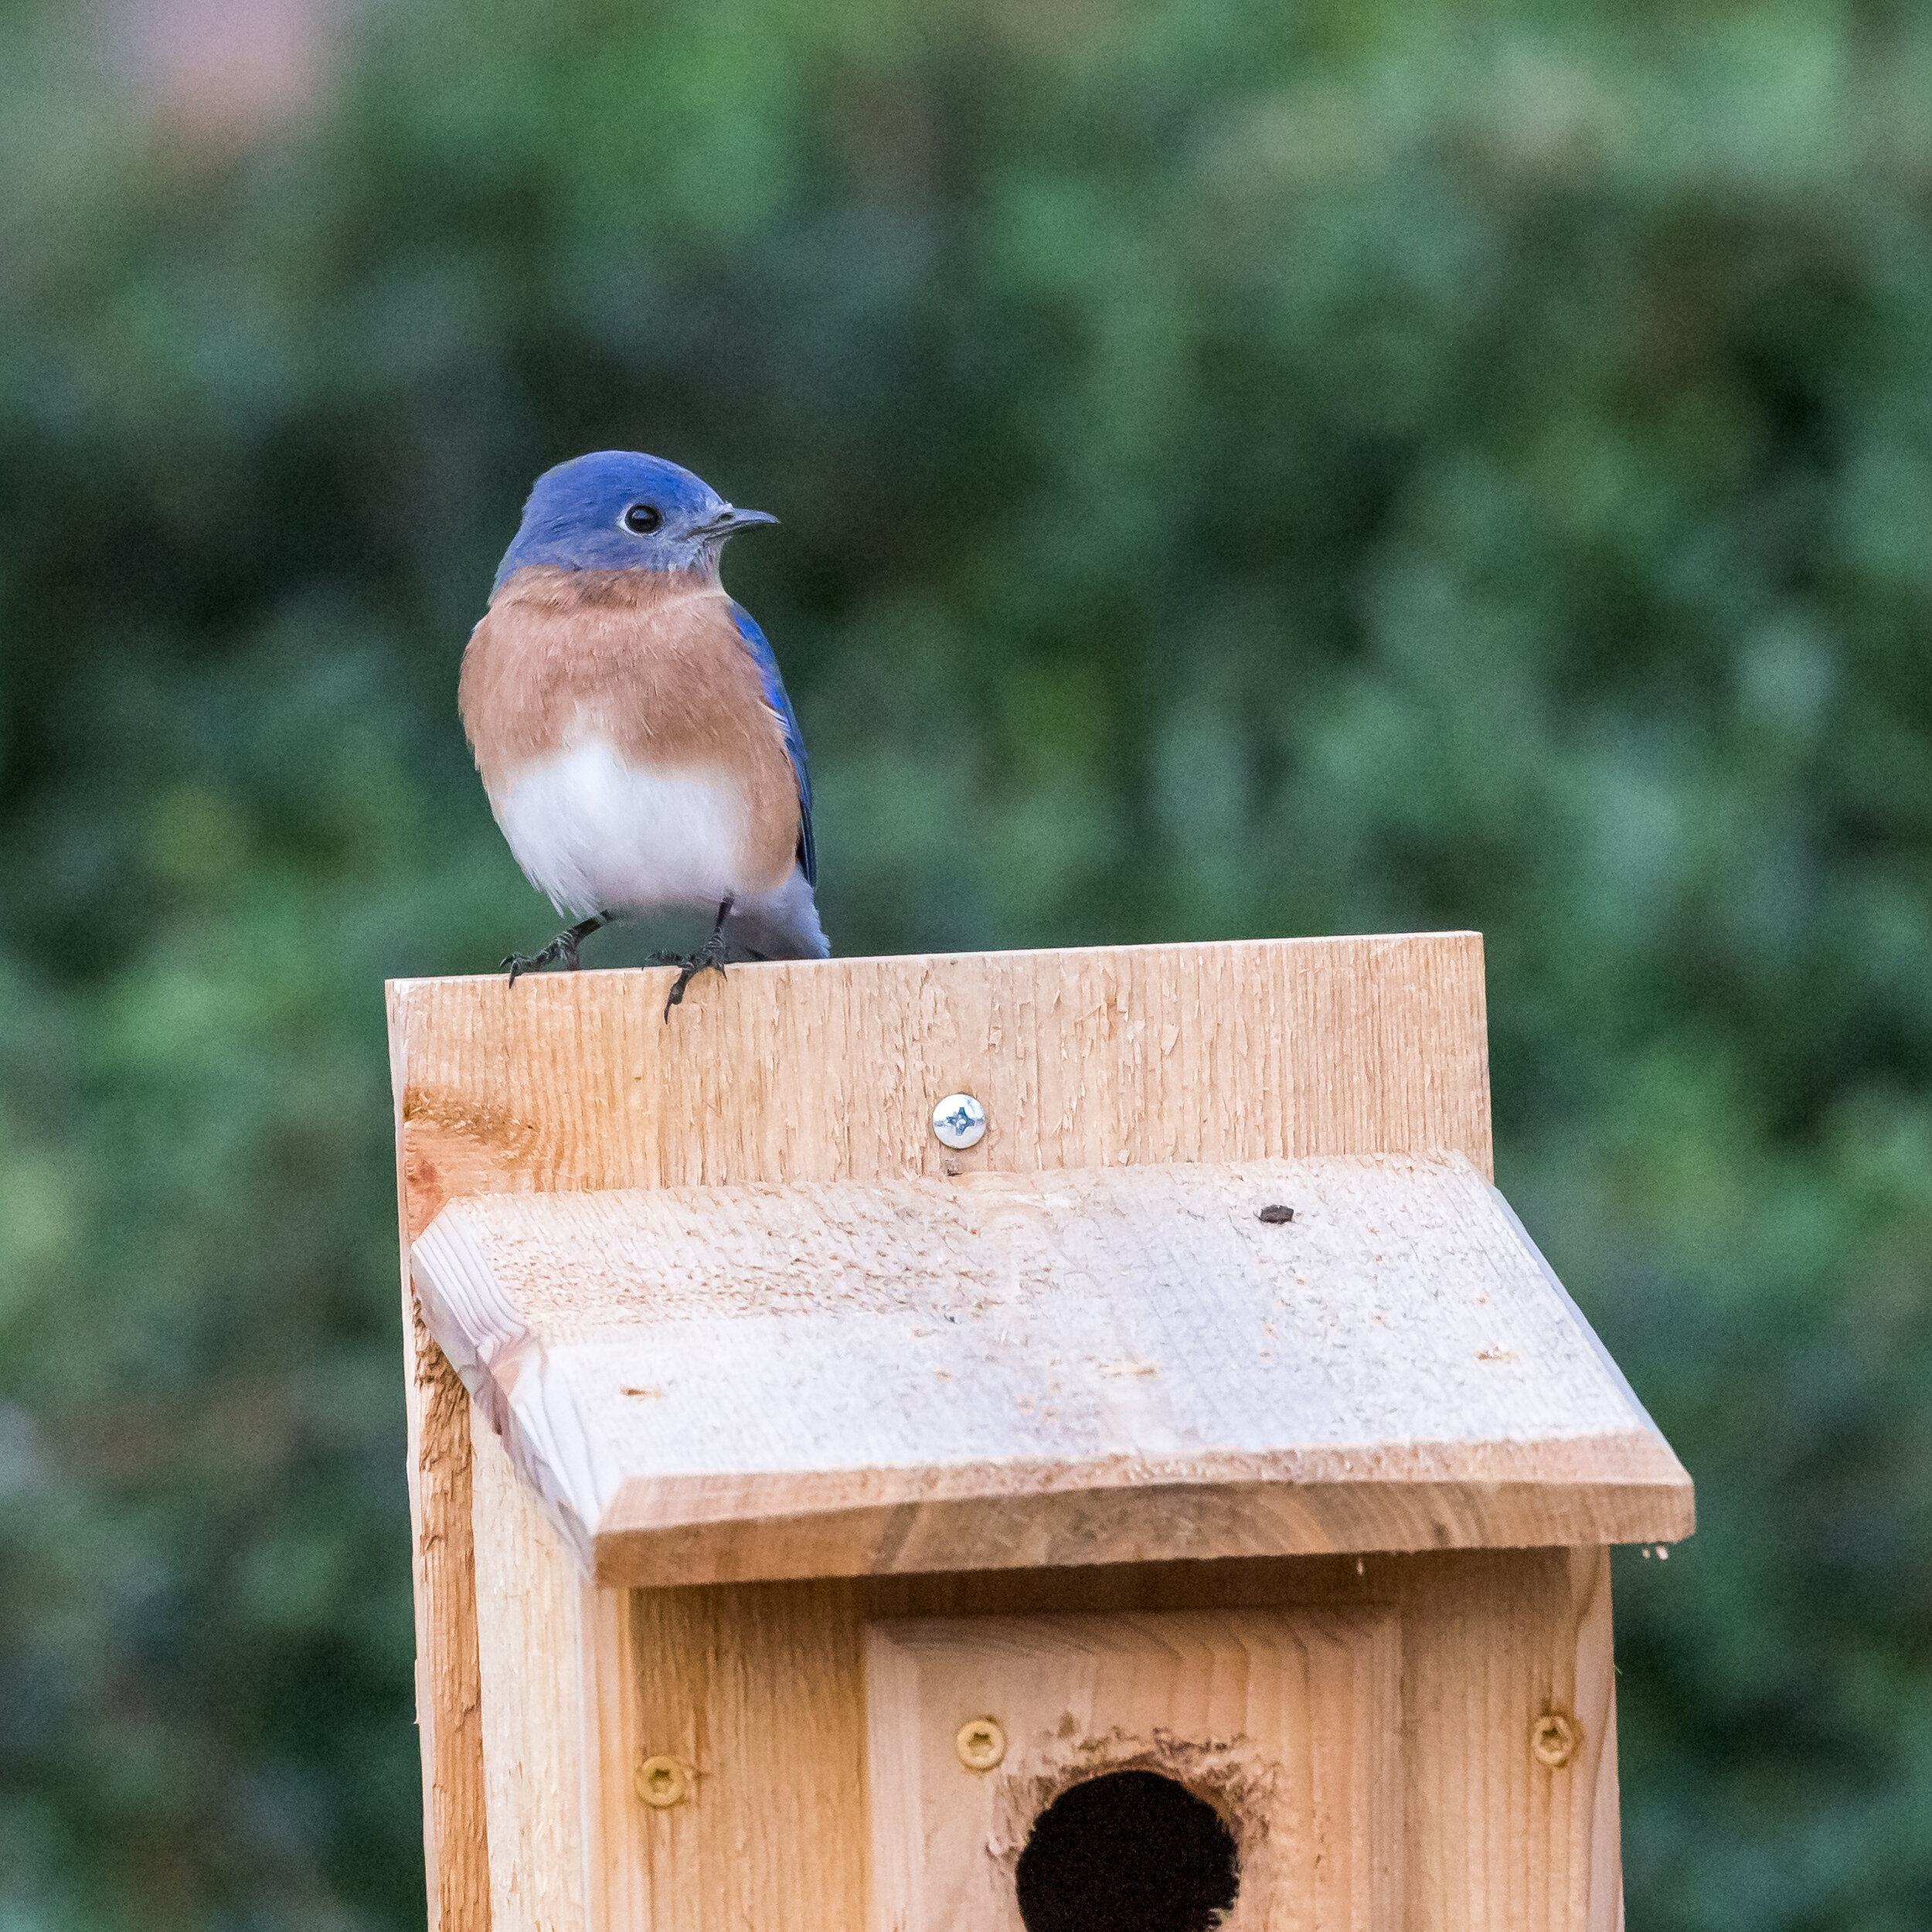 Bluebird finds a new home